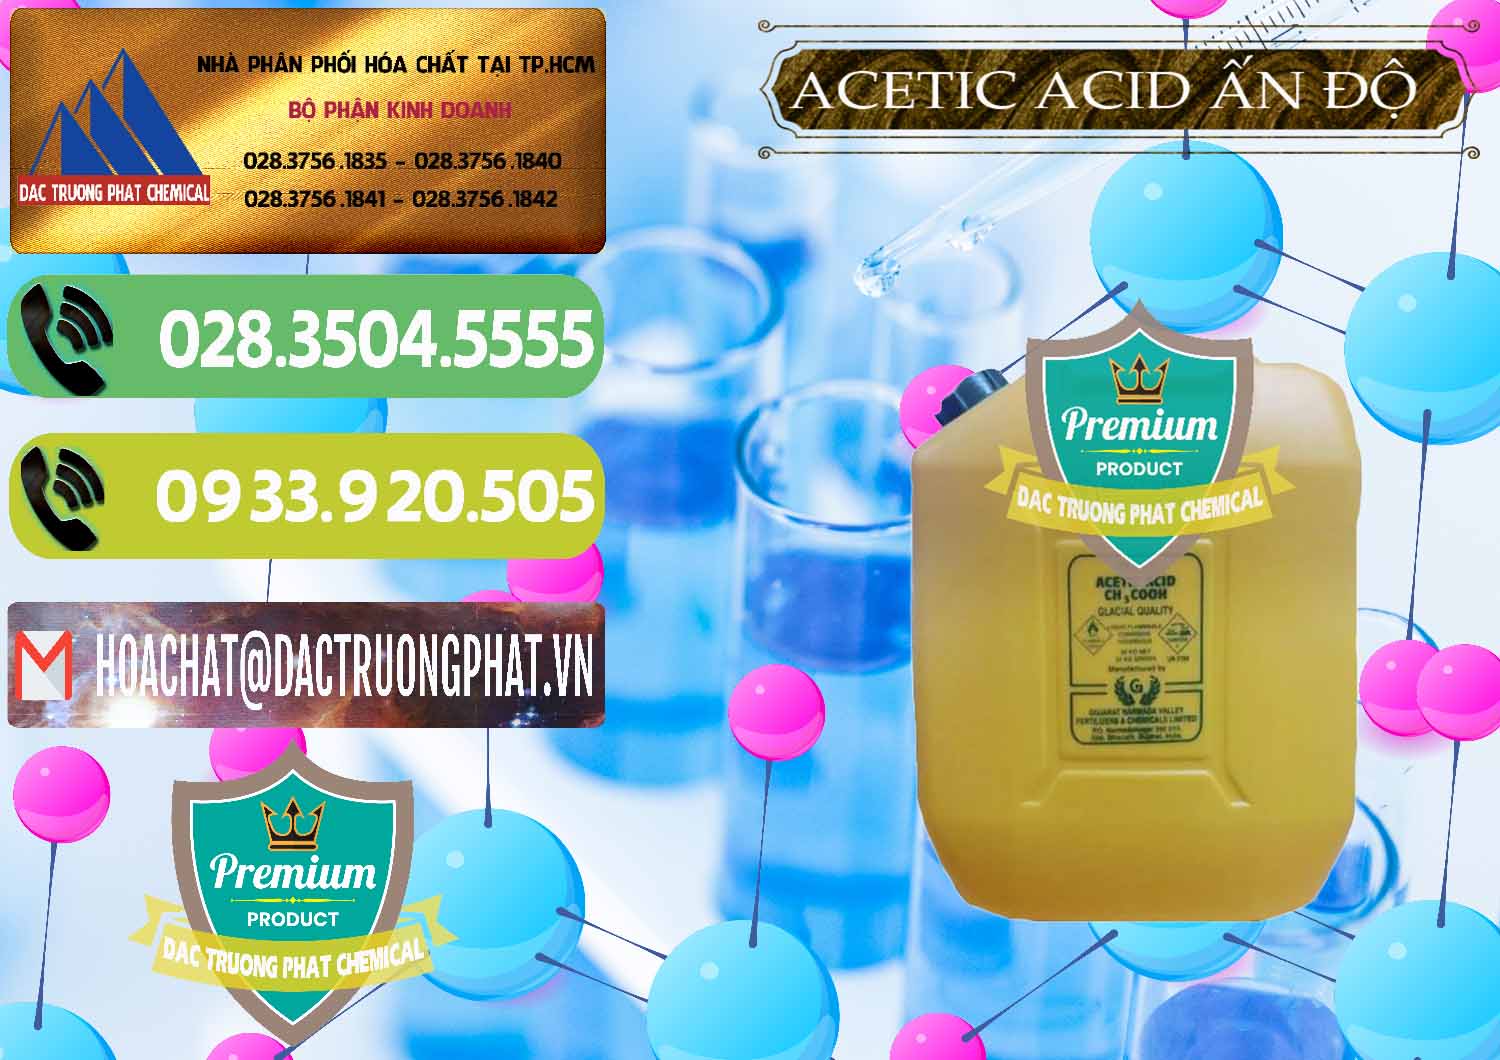 Công ty chuyên bán & phân phối Acetic Acid – Axit Acetic Ấn Độ India - 0359 - Kinh doanh - phân phối hóa chất tại TP.HCM - hoachatmientay.vn